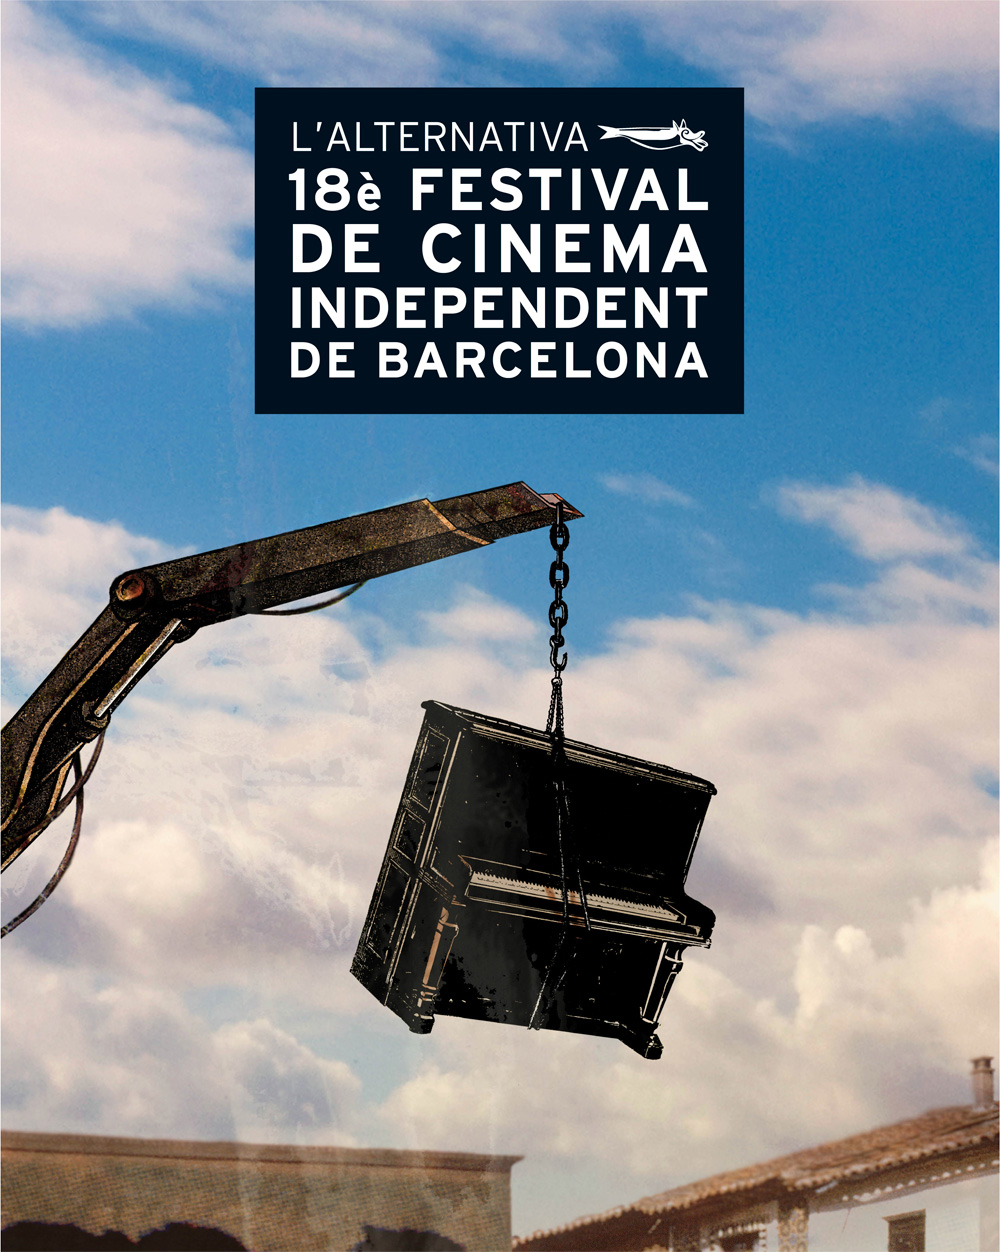 18è festival de cinema independent de Barcelona l'Alternativa